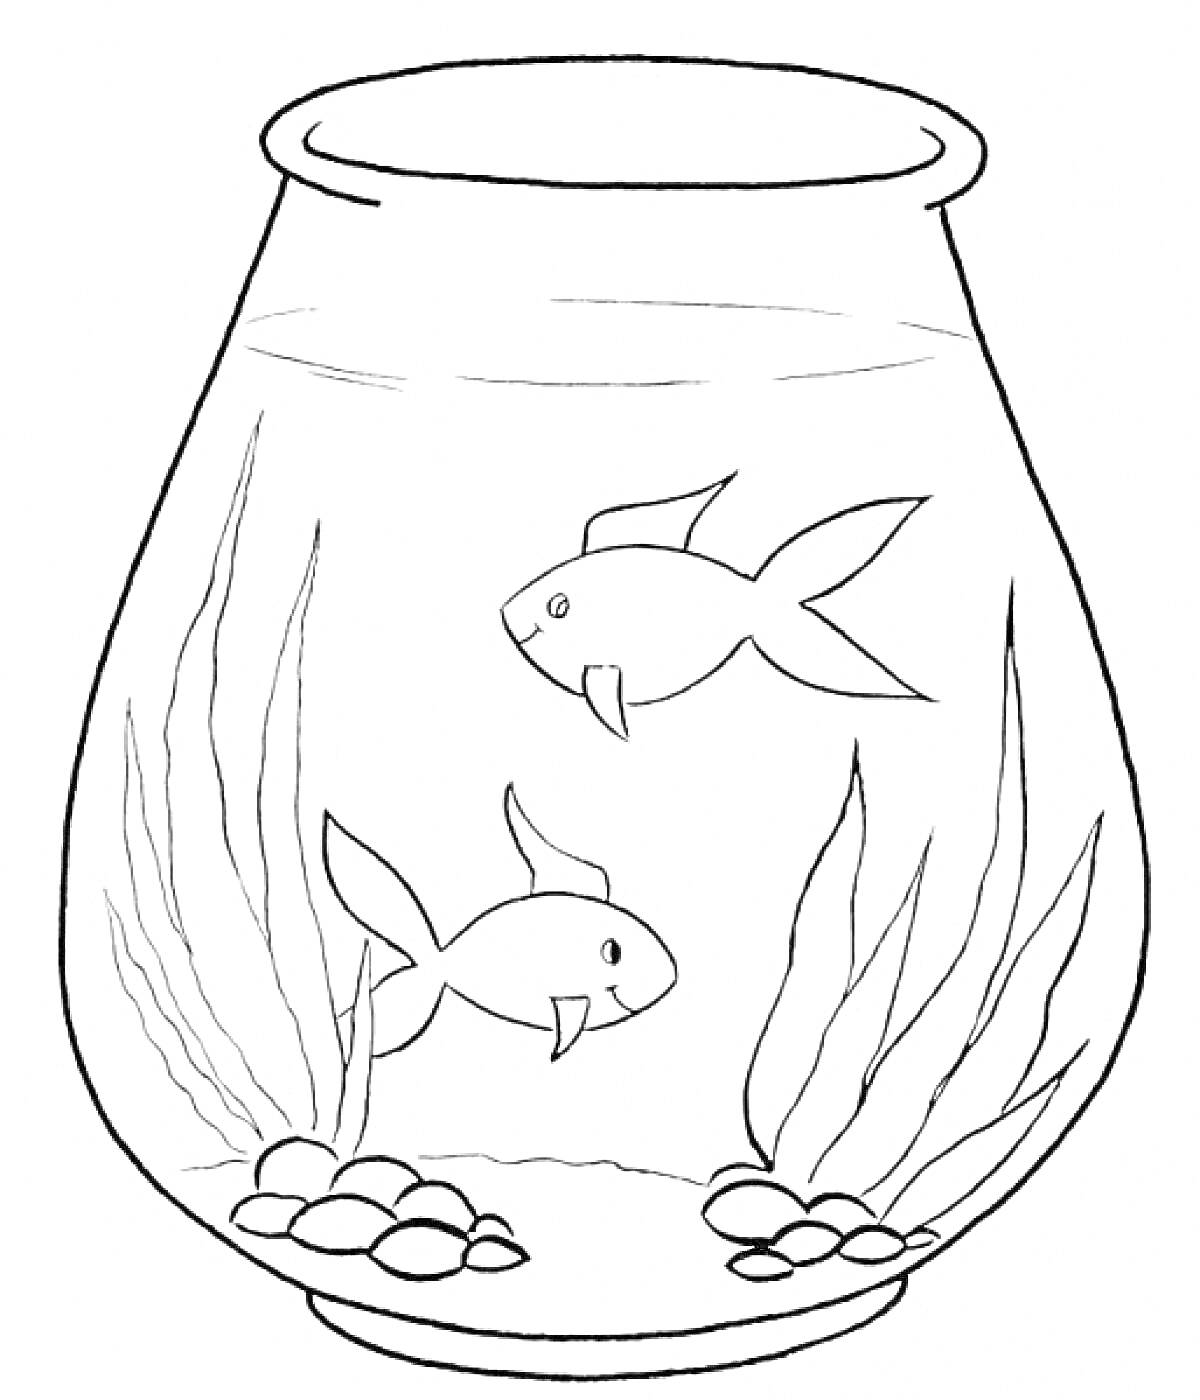 Раскраска Аквариум с двумя рыбками, водоросли и камни на дне